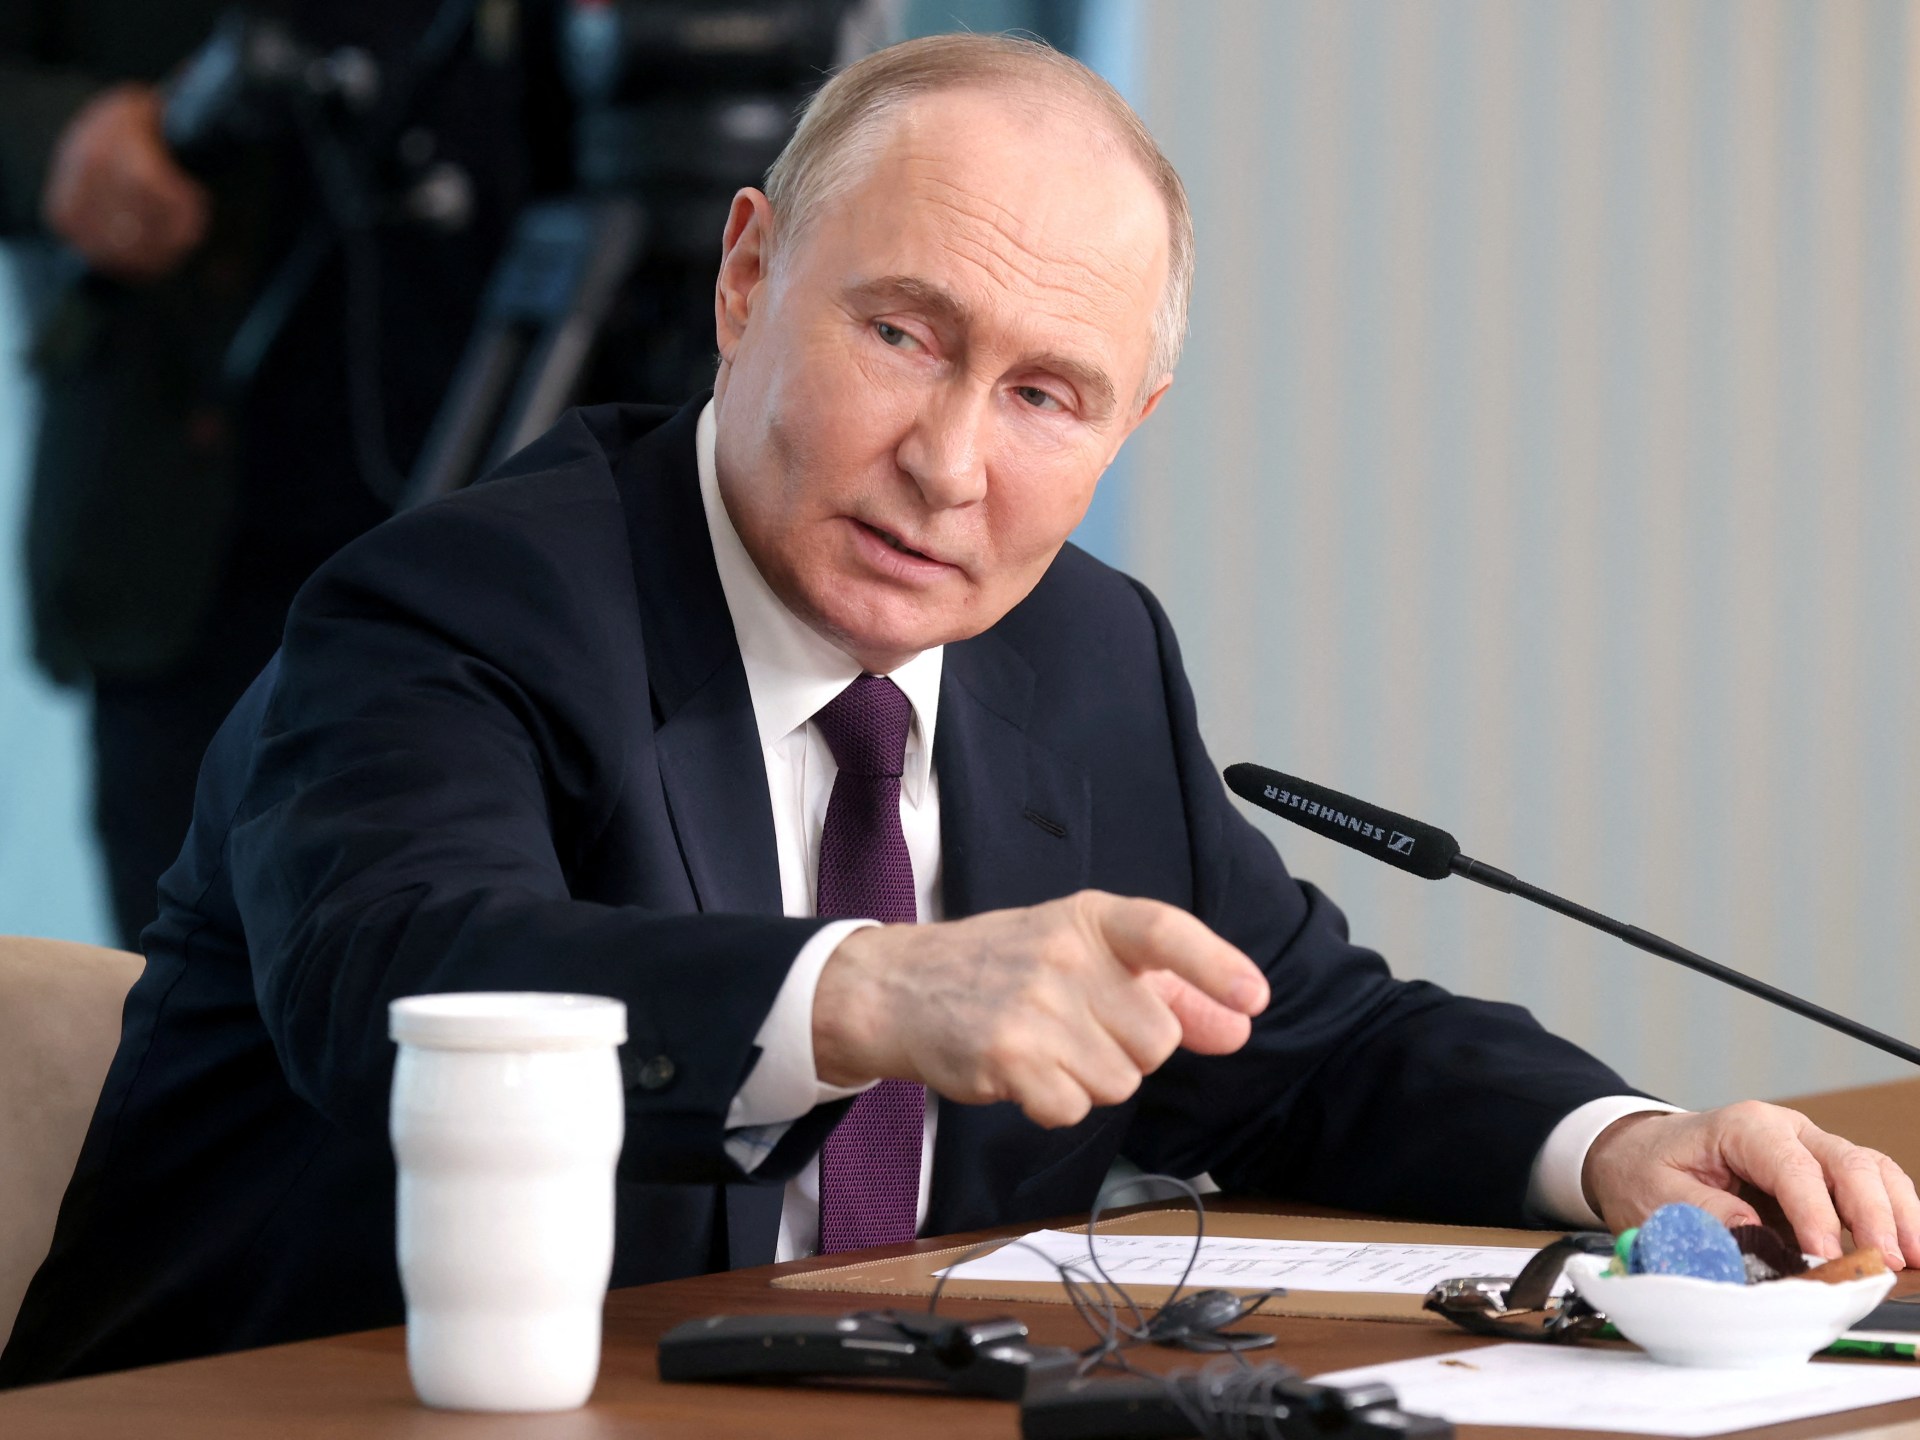 بوتين يحذر الغرب بشأن أسلحة أوكرانيا وترسانتها النووية في مؤتمر صحفي |  أخبار فلاديمير بوتين